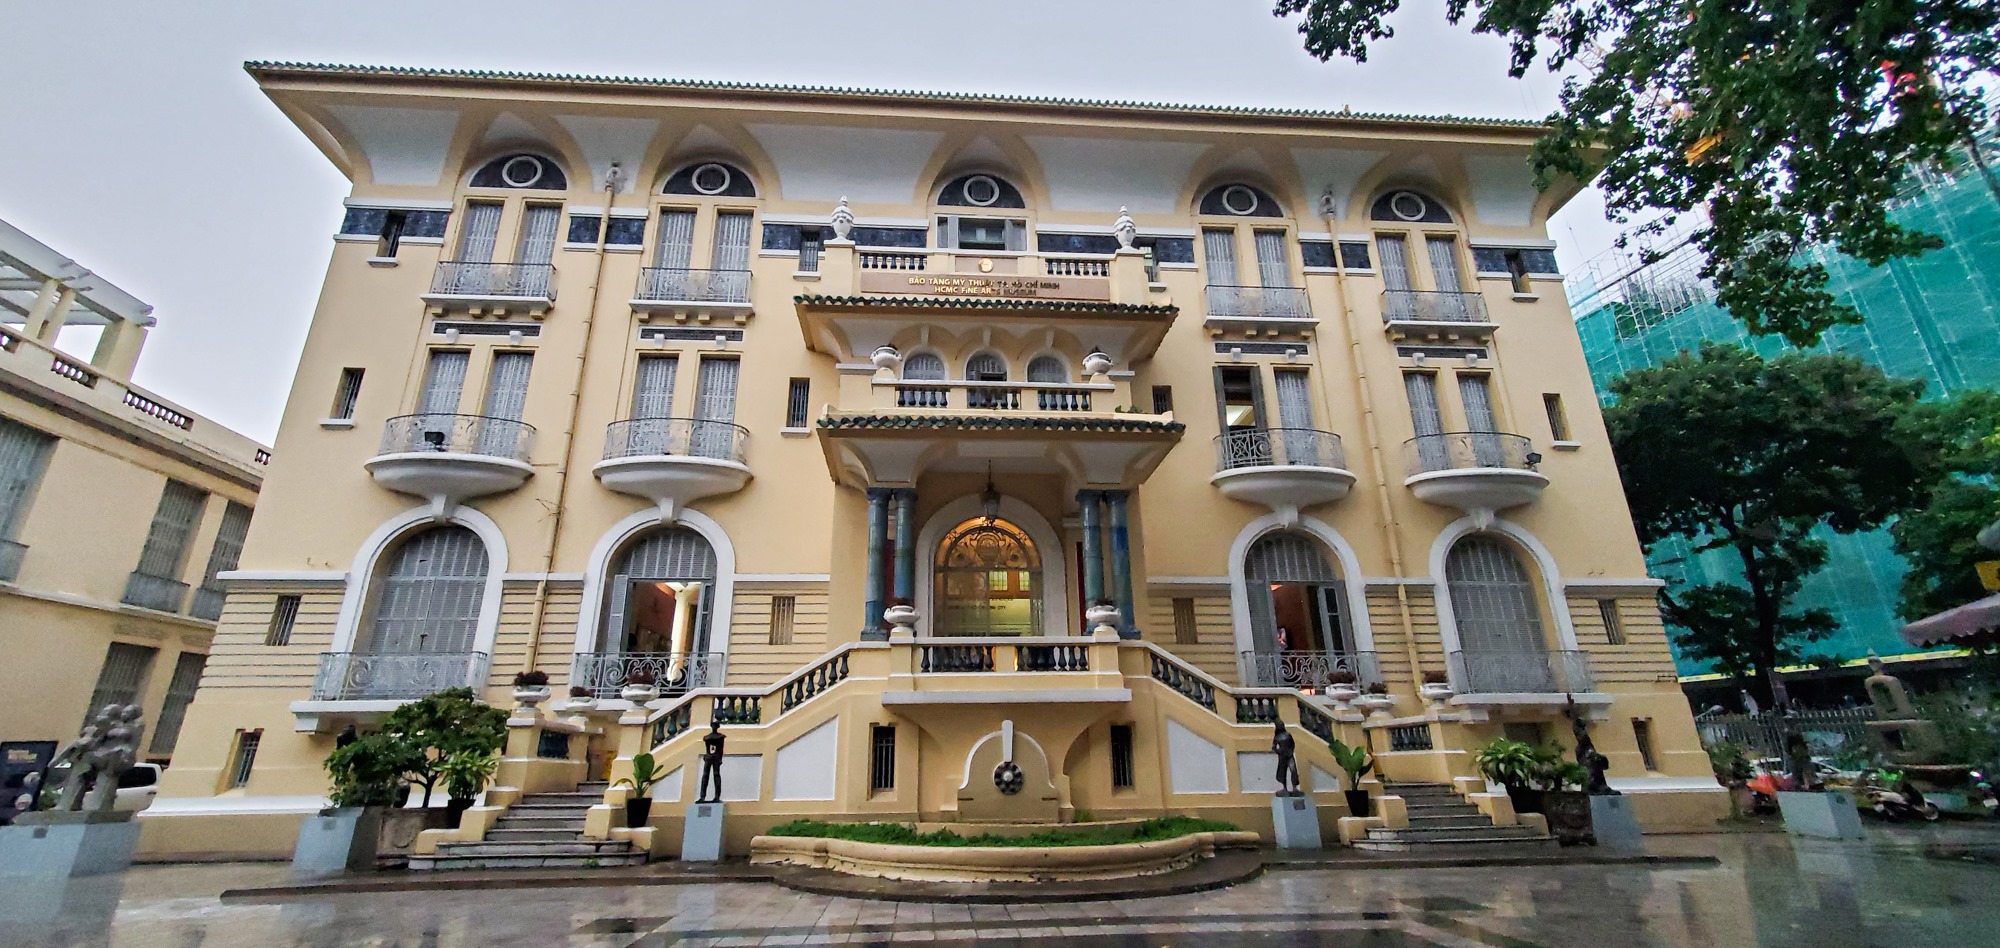 La galerie d'art hantée - Musée Ho Chi Minh